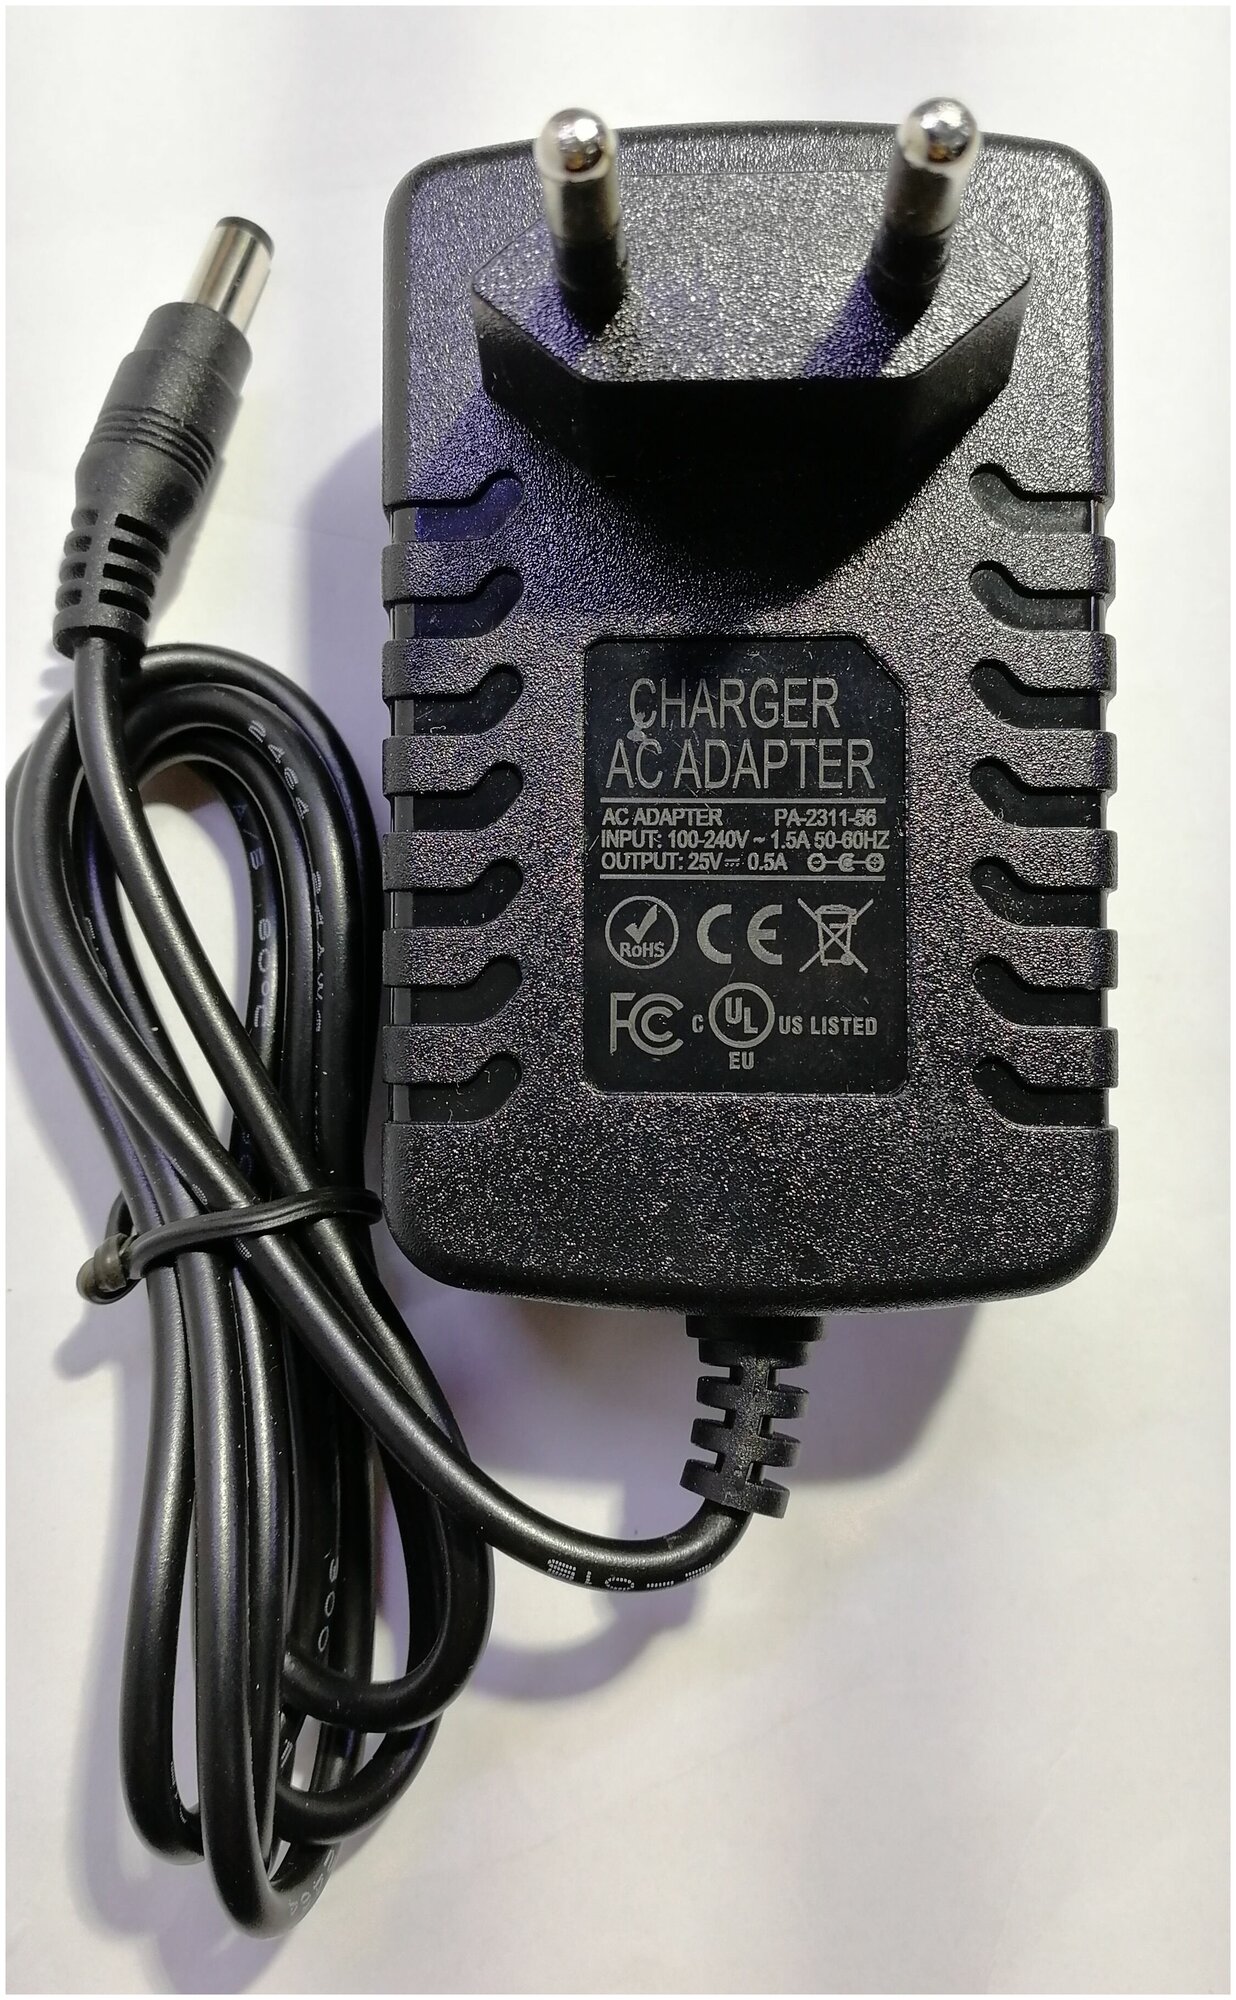 Сетевое зарядное устройство блок питания для аккумуляторных пылесосов Electrolux ergorapido, AEG DC 25v 0.5a